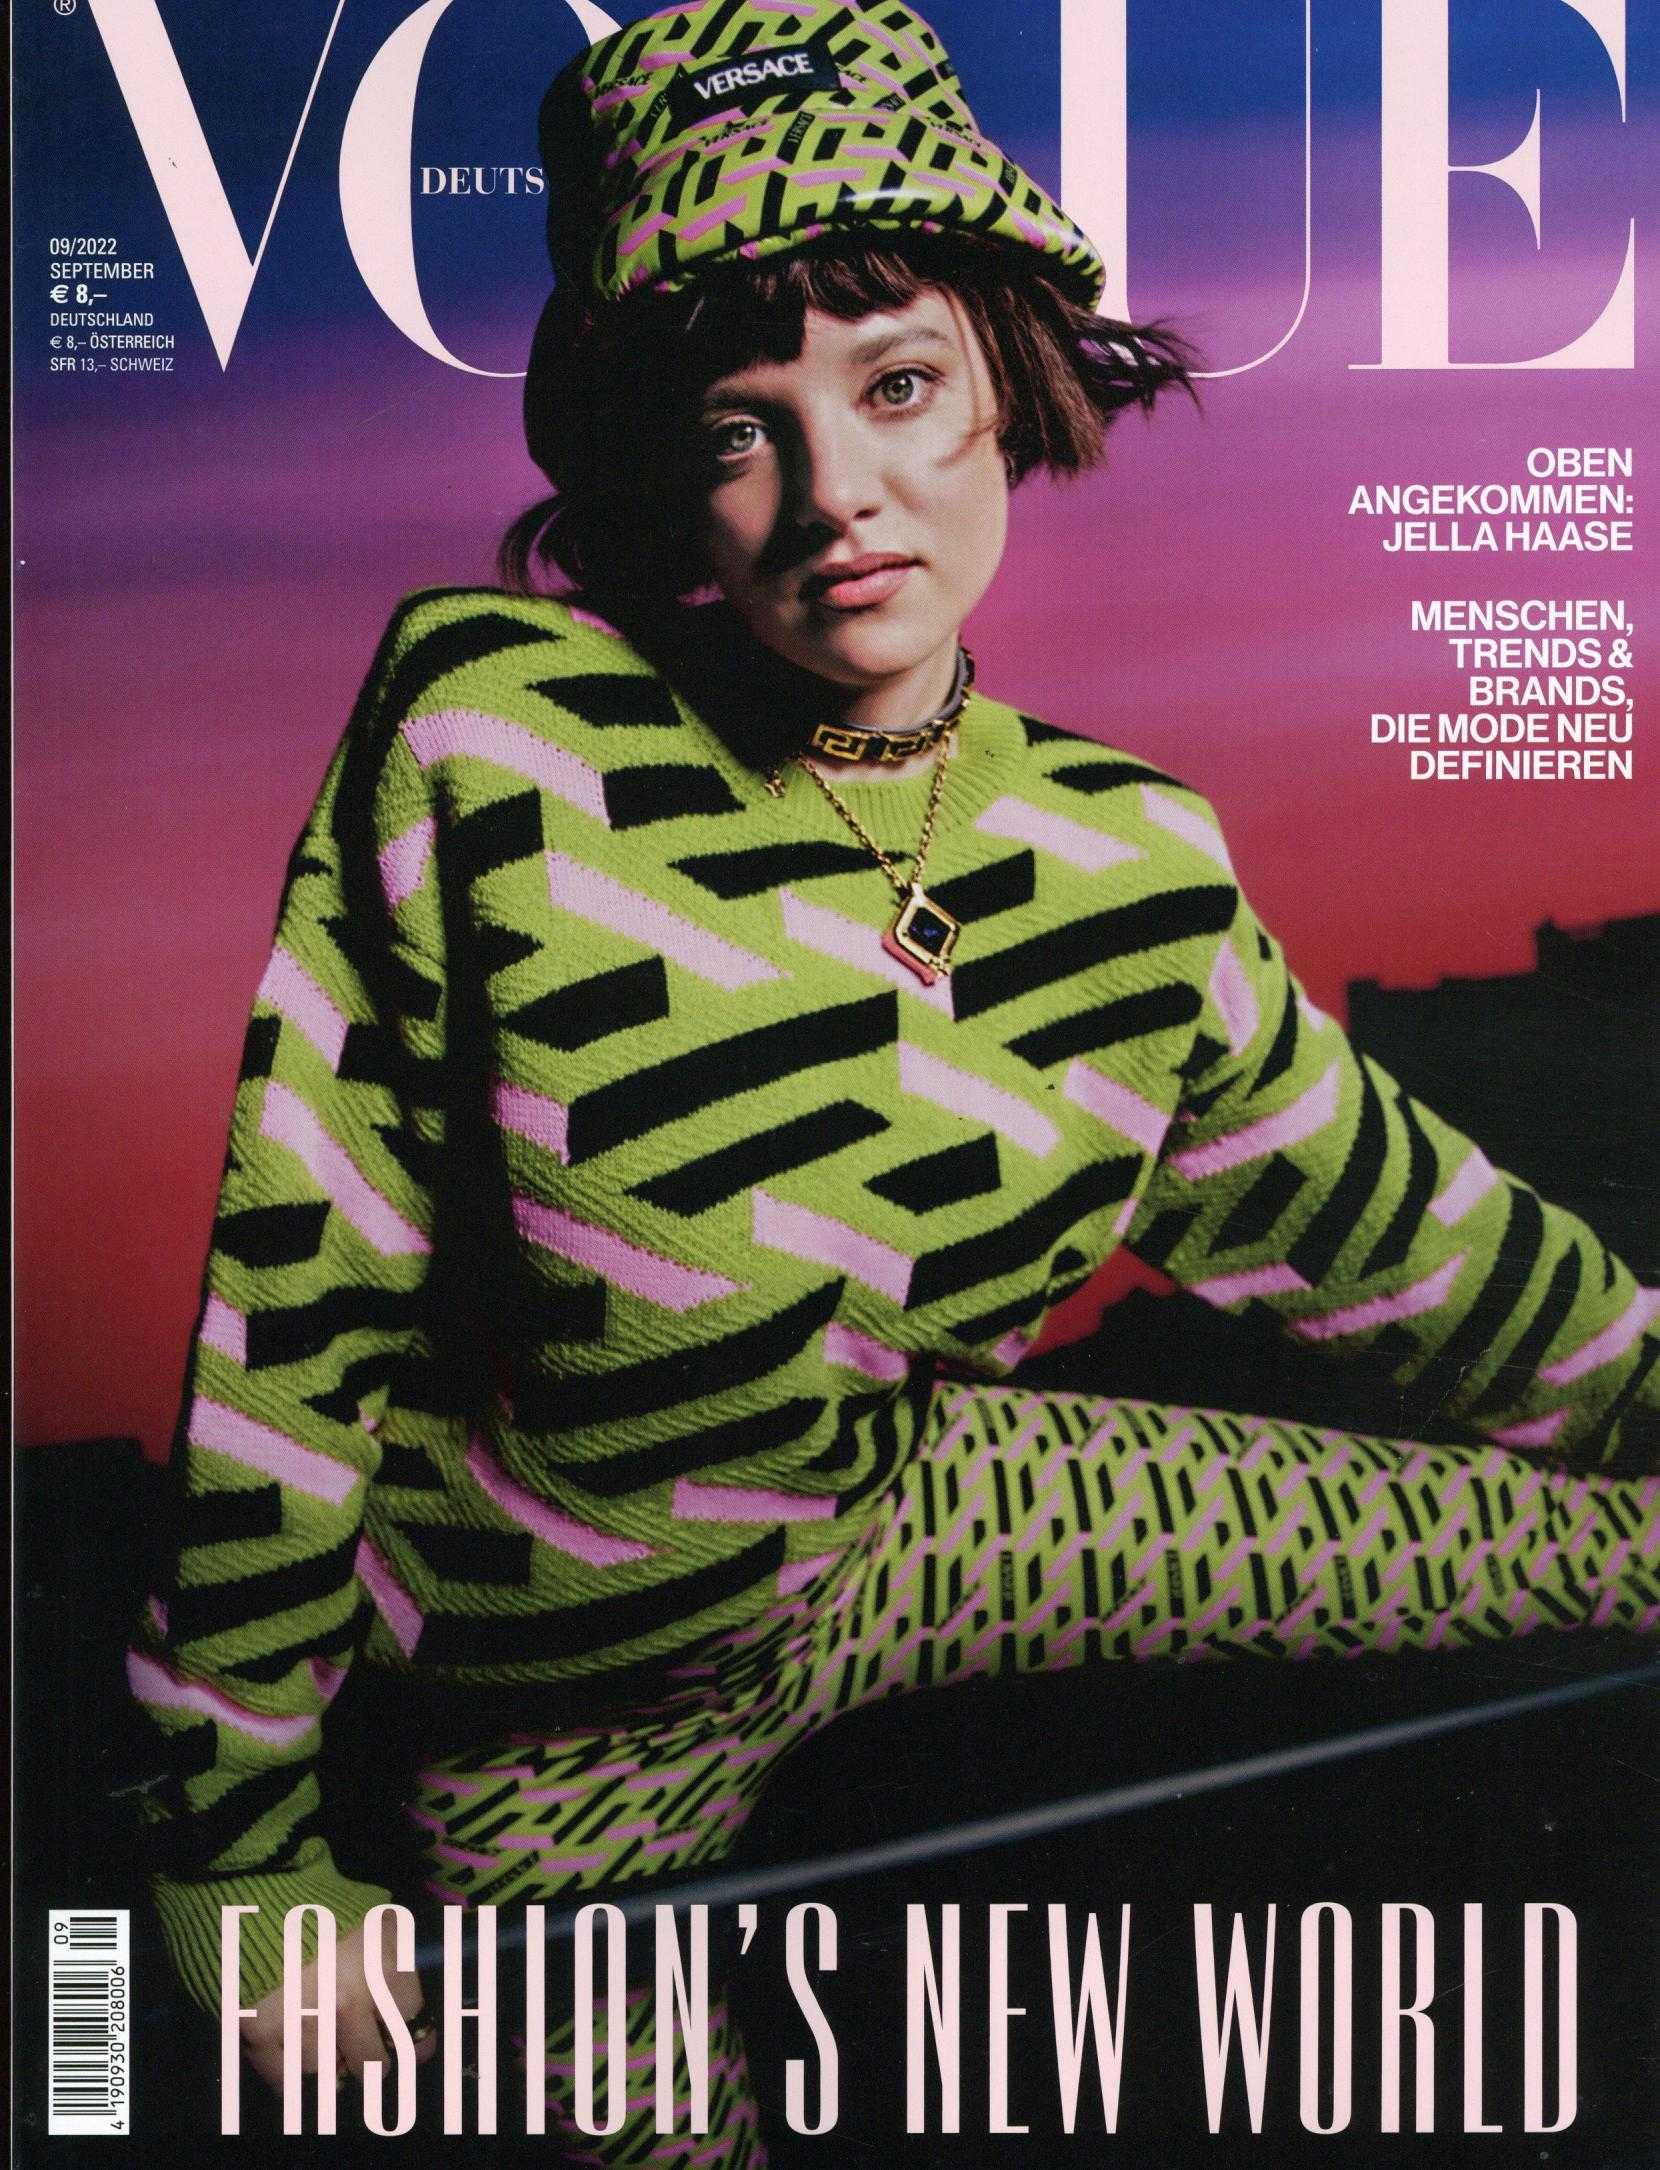 Vogue (DE)